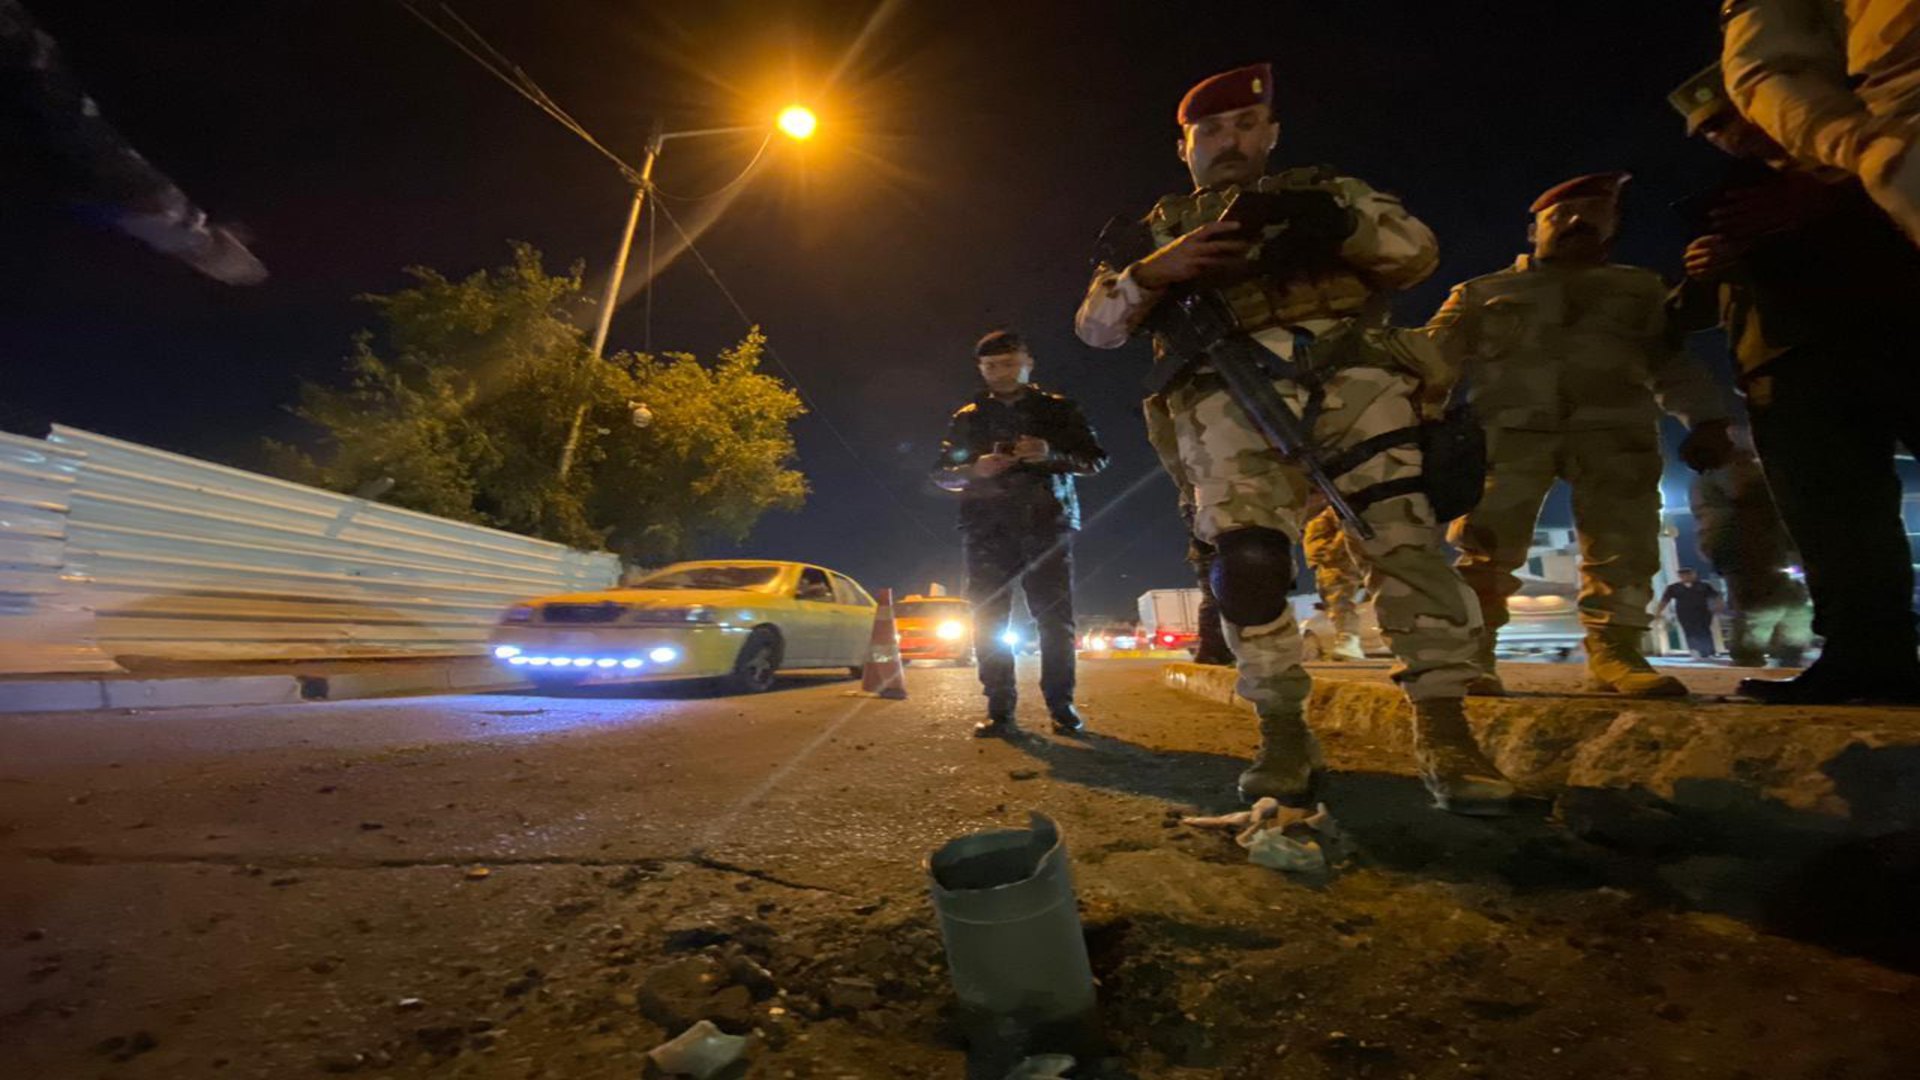 خلية الاعلام الأمني تؤكد وقوع قصف صاروخي قرب مطار بغداد الدولي